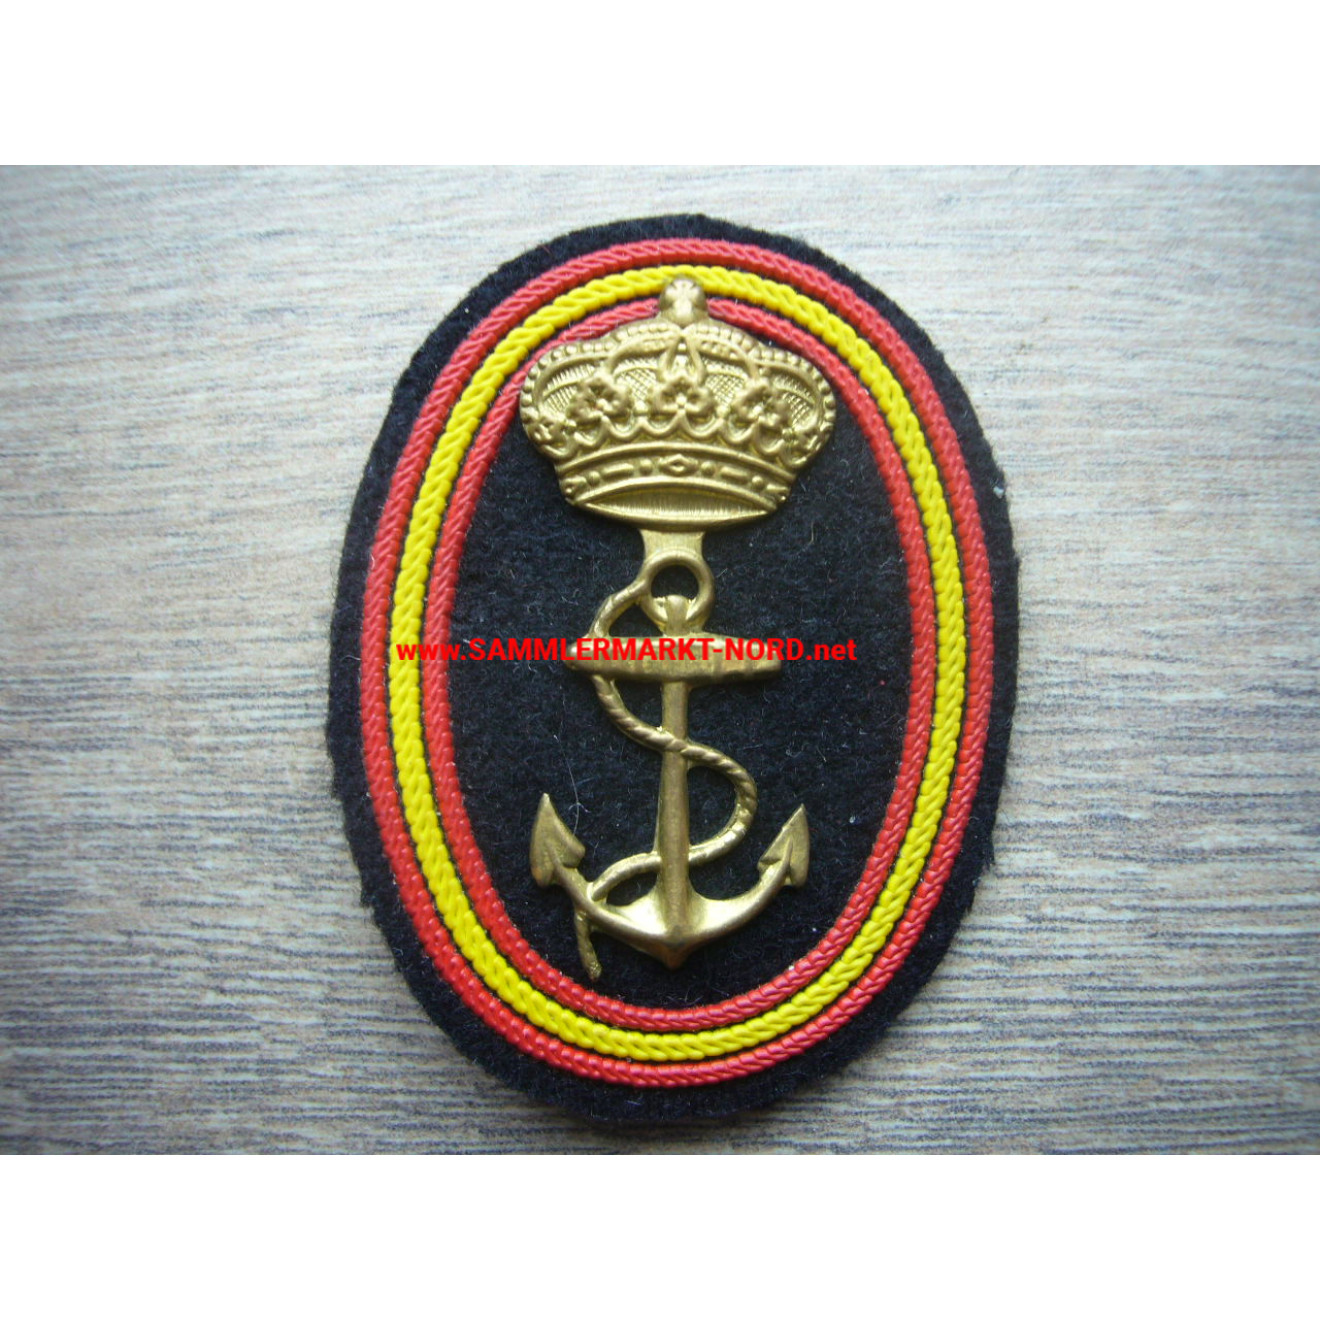 Spain - badge for navy visor caps